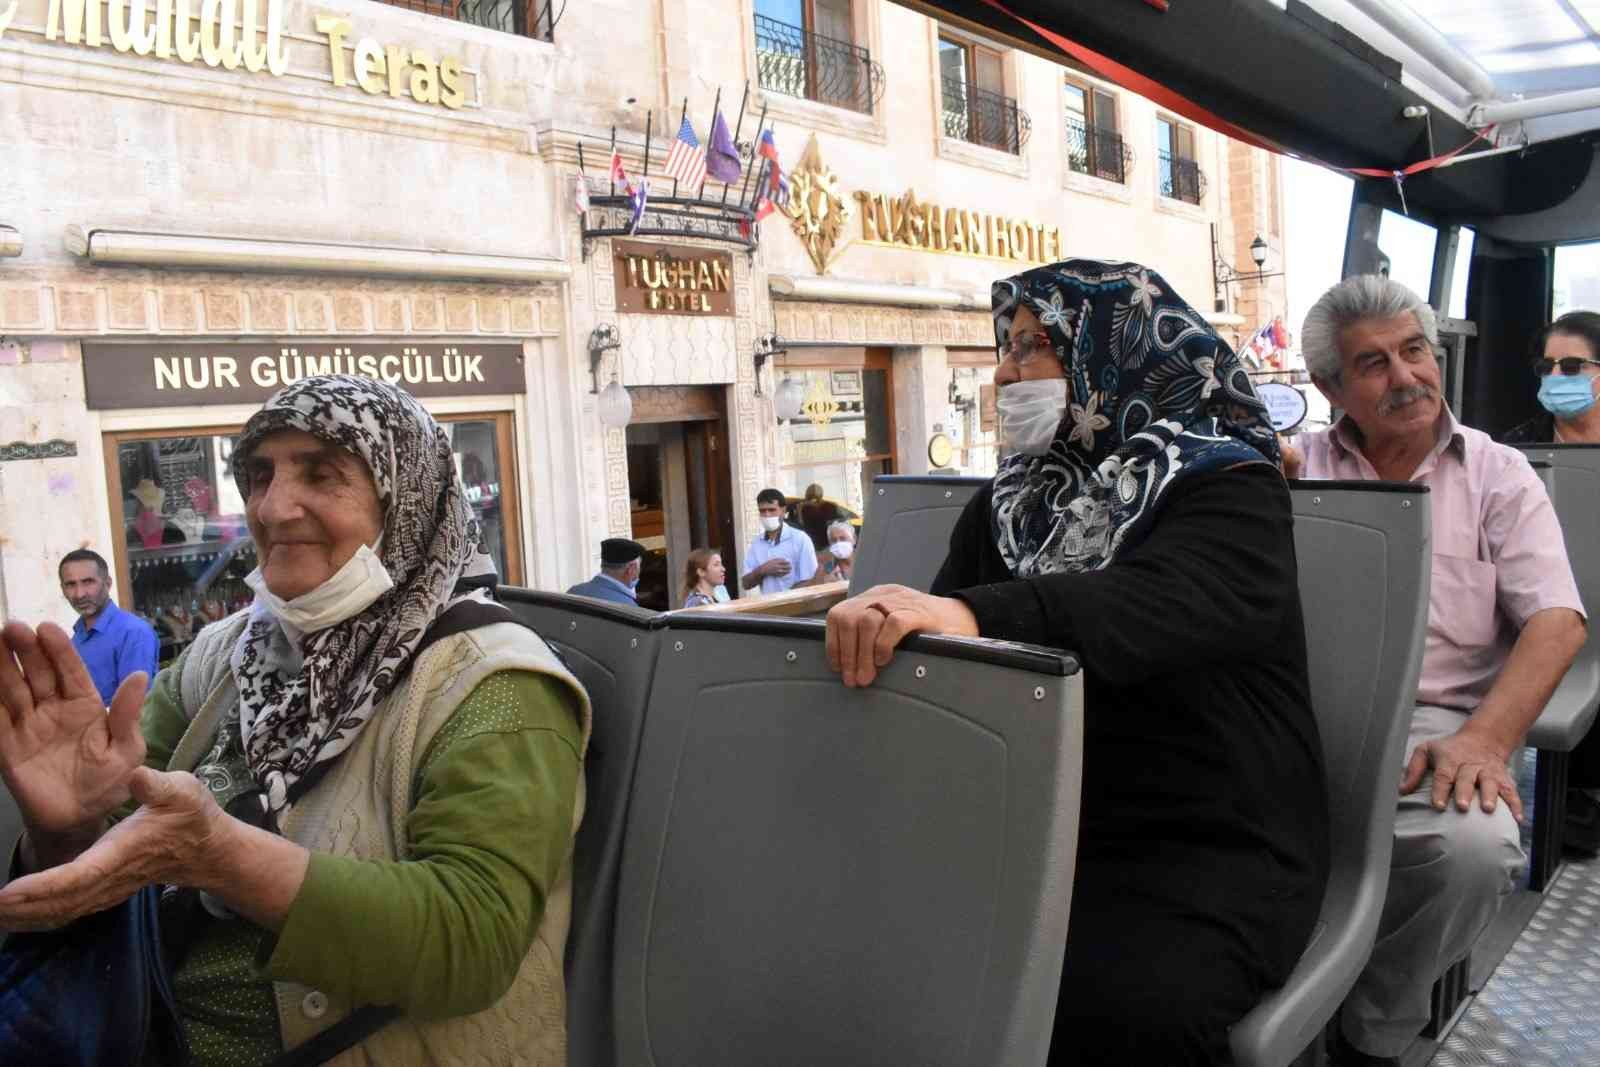 Mardin’de yaşlı vatandaşlar gönüllerince eğlendi #mardin